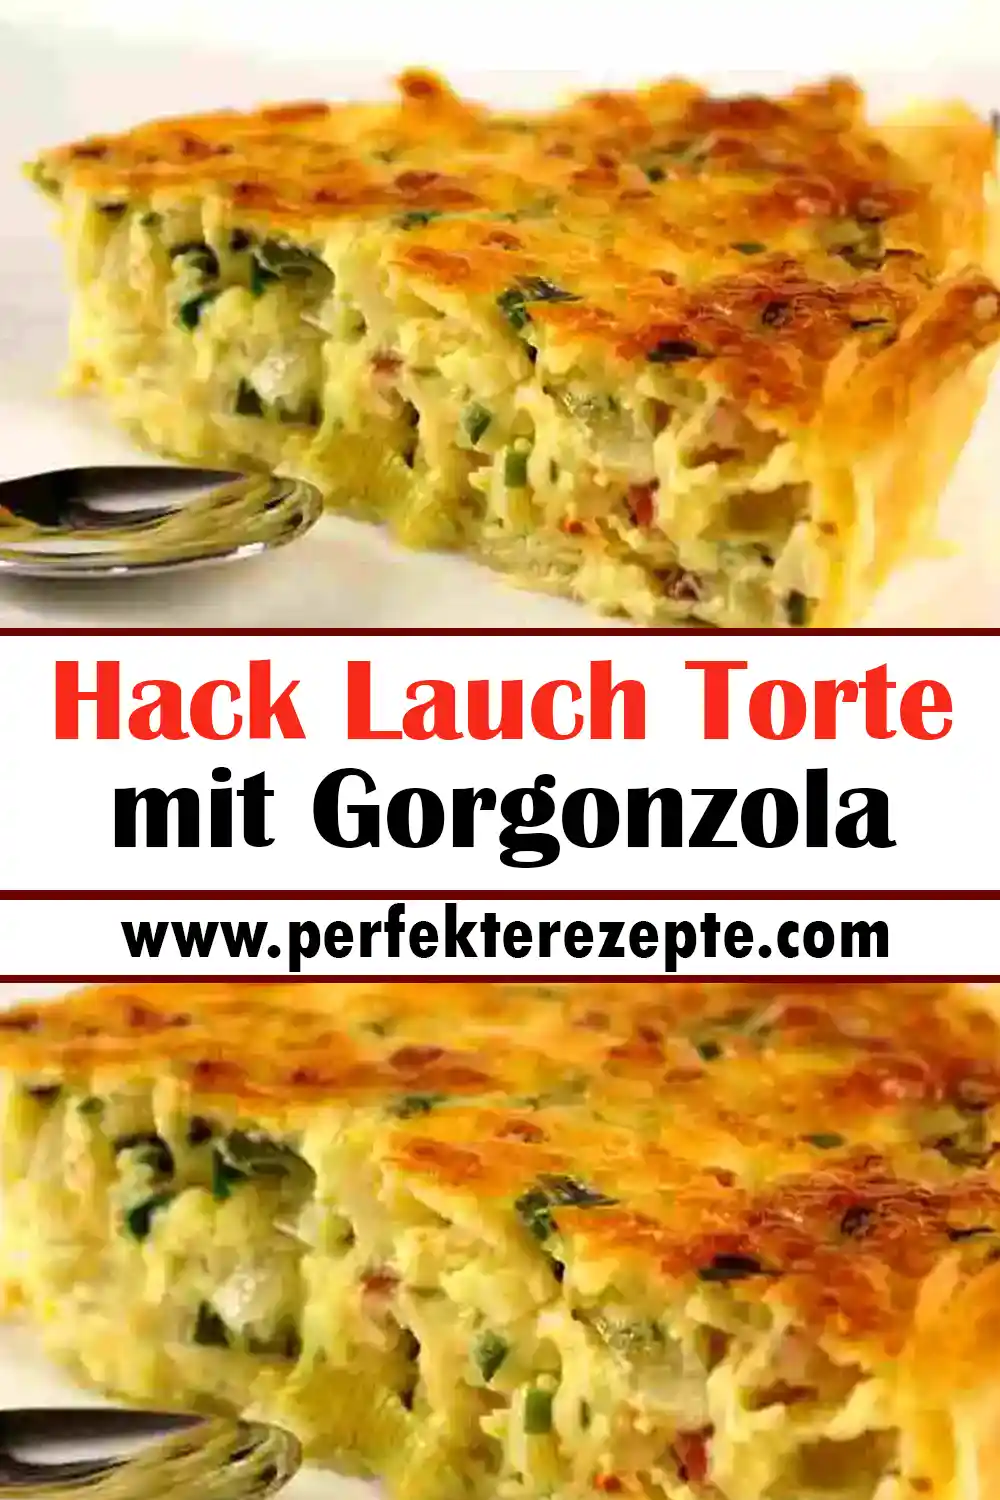 Hack Lauch Torte mit Gorgonzola Rezept